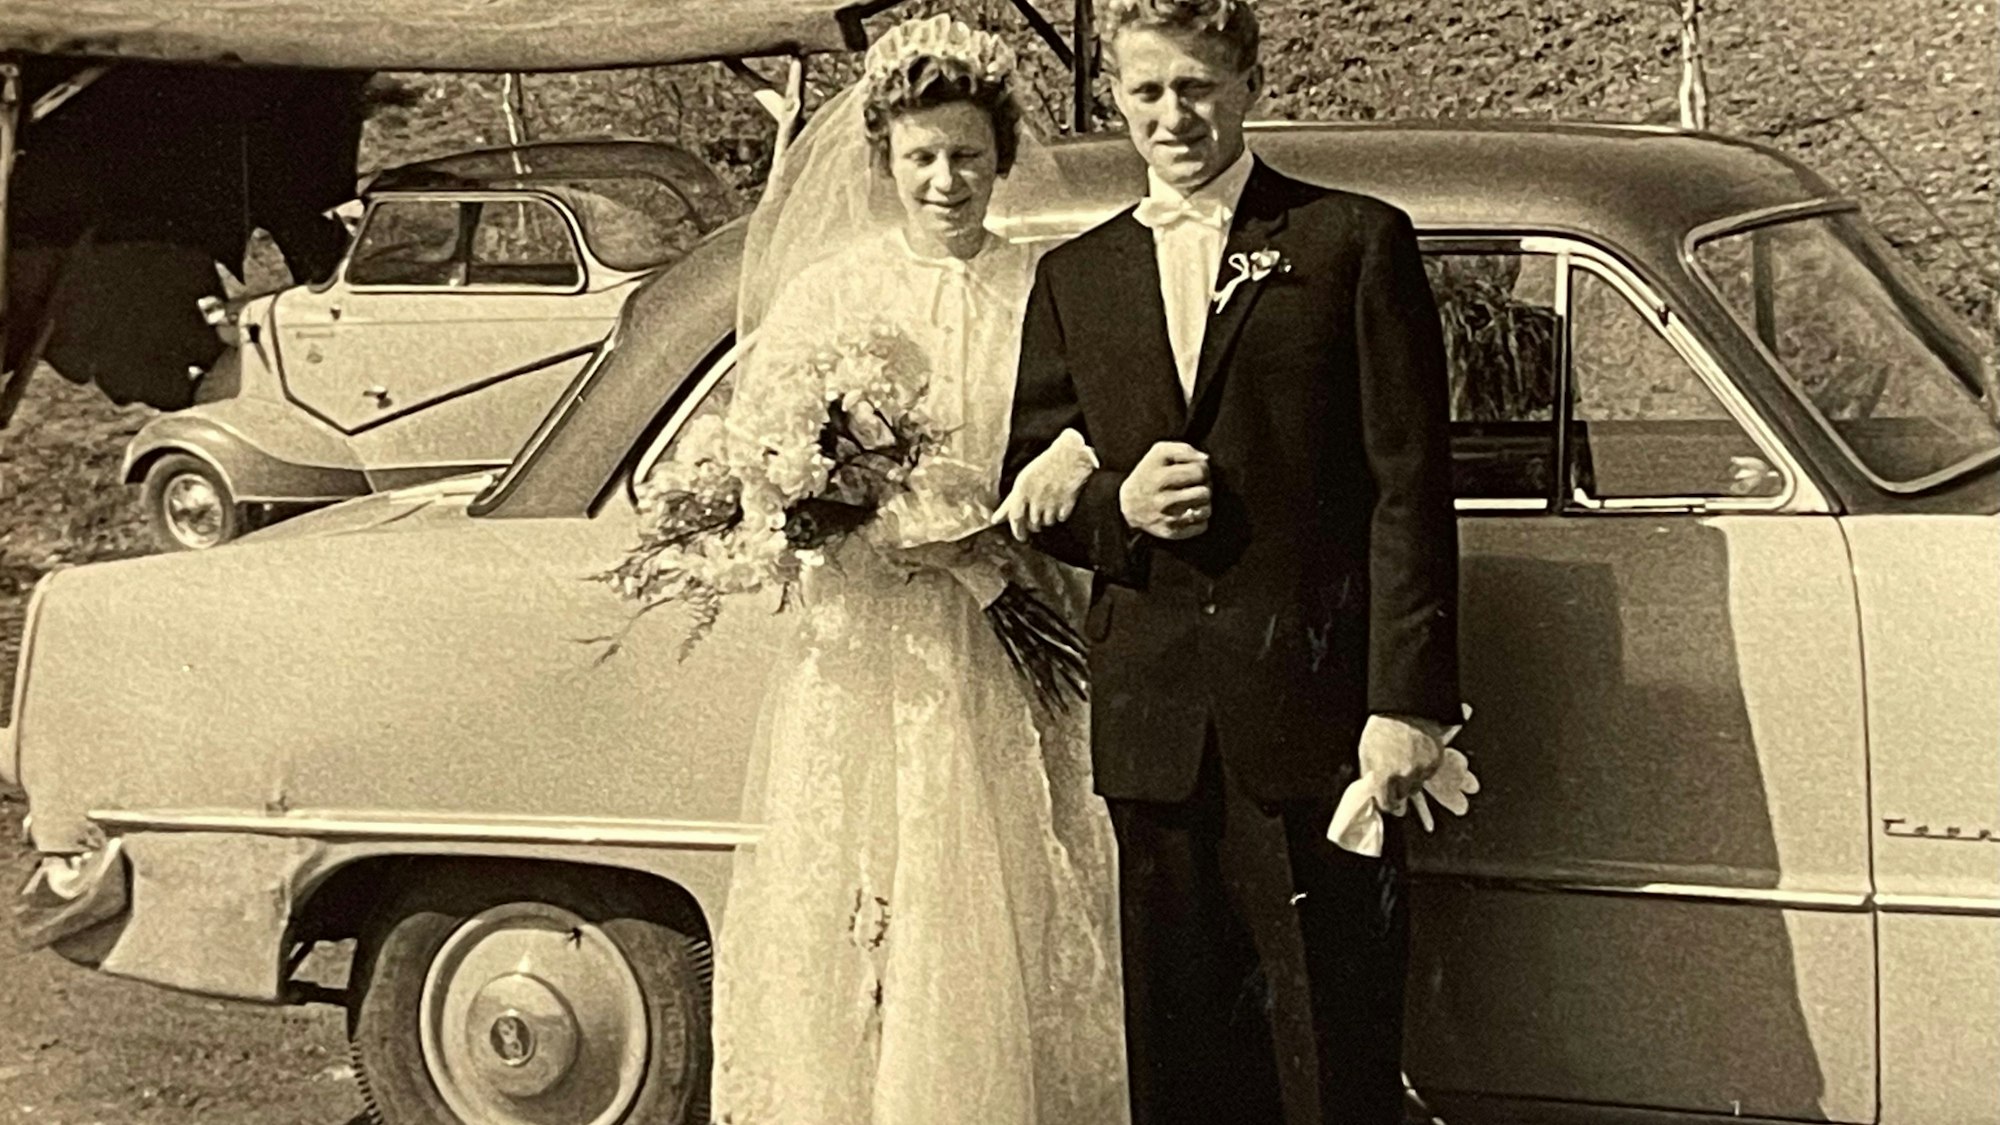 Standesamtlich wurden Irmgard und Walter Hannig am 20. März 1959 getraut, die kirchliche Hochzeit folgte neun Tage später. Heute feiern die Senioren aus Engelskirchen-Loope ihre Eiserne Hochzeit.